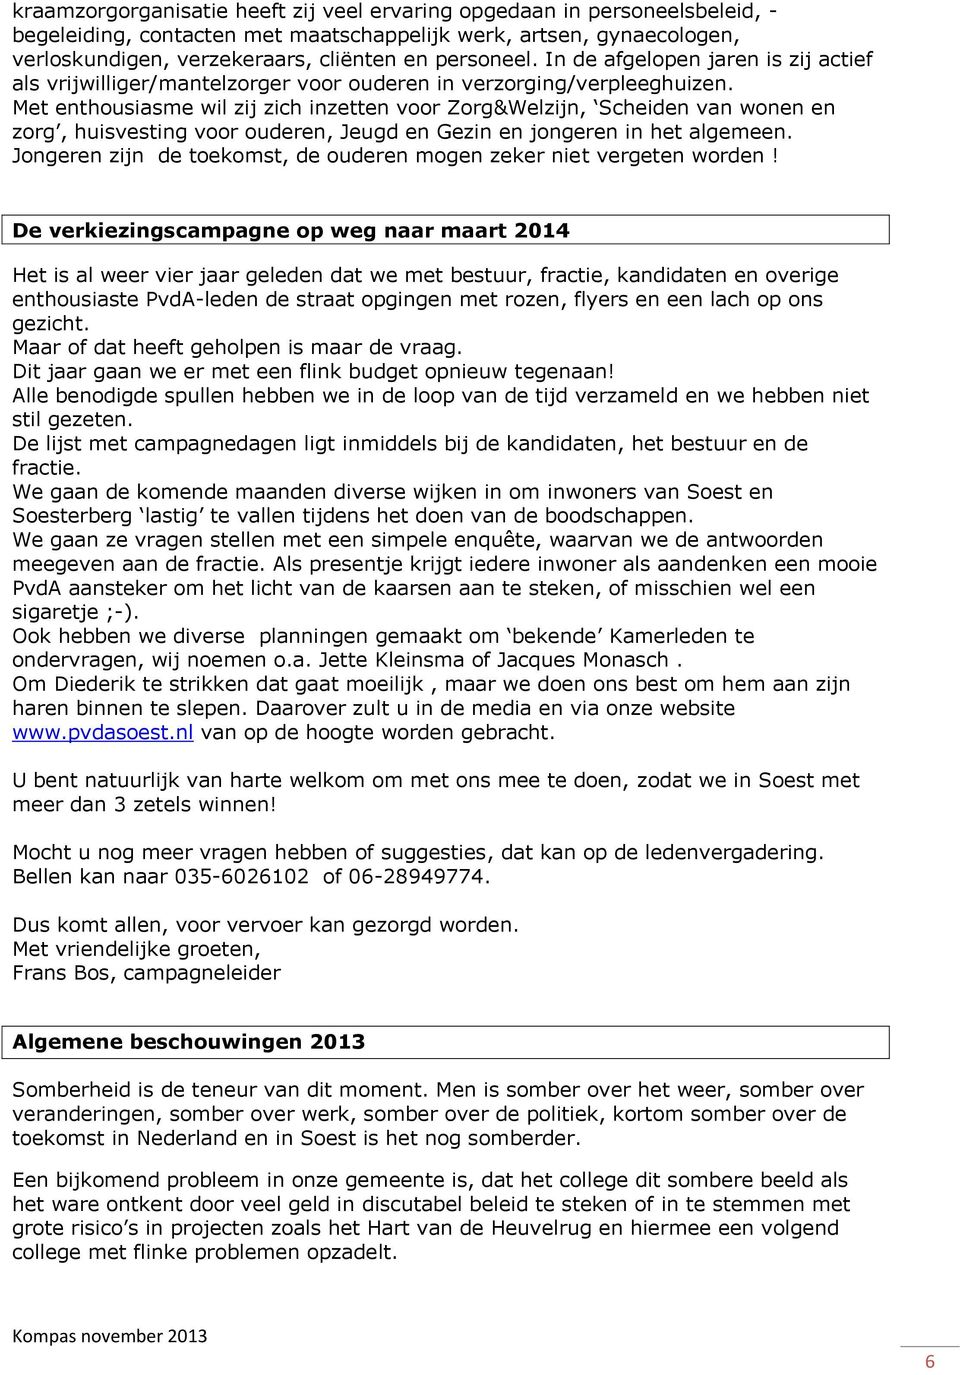 De verkiezingscampagne op weg naar maart 2014 Het is al weer vier jaar geleden dat we met bestuur, fractie, kandidaten en overige enthousiaste PvdA-leden de straat opgingen met rozen, flyers en een